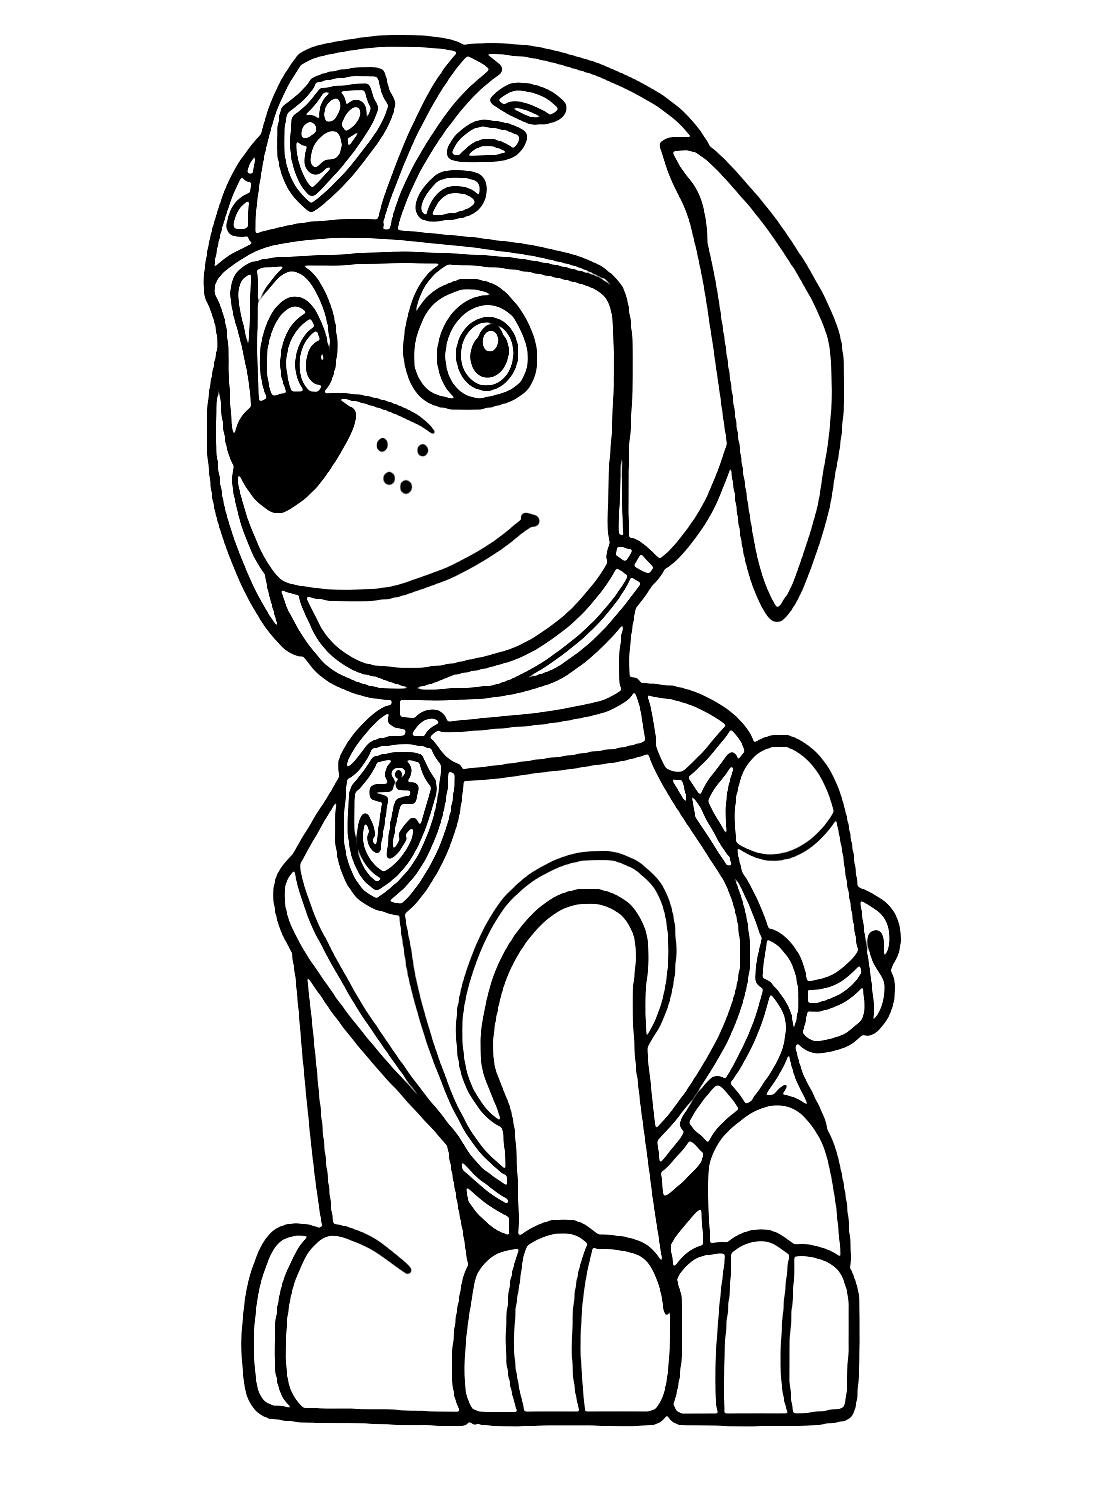 Desenhos de Zuma de Patrulha Canina para Colorir e Imprimir - ColorirOnline .Com